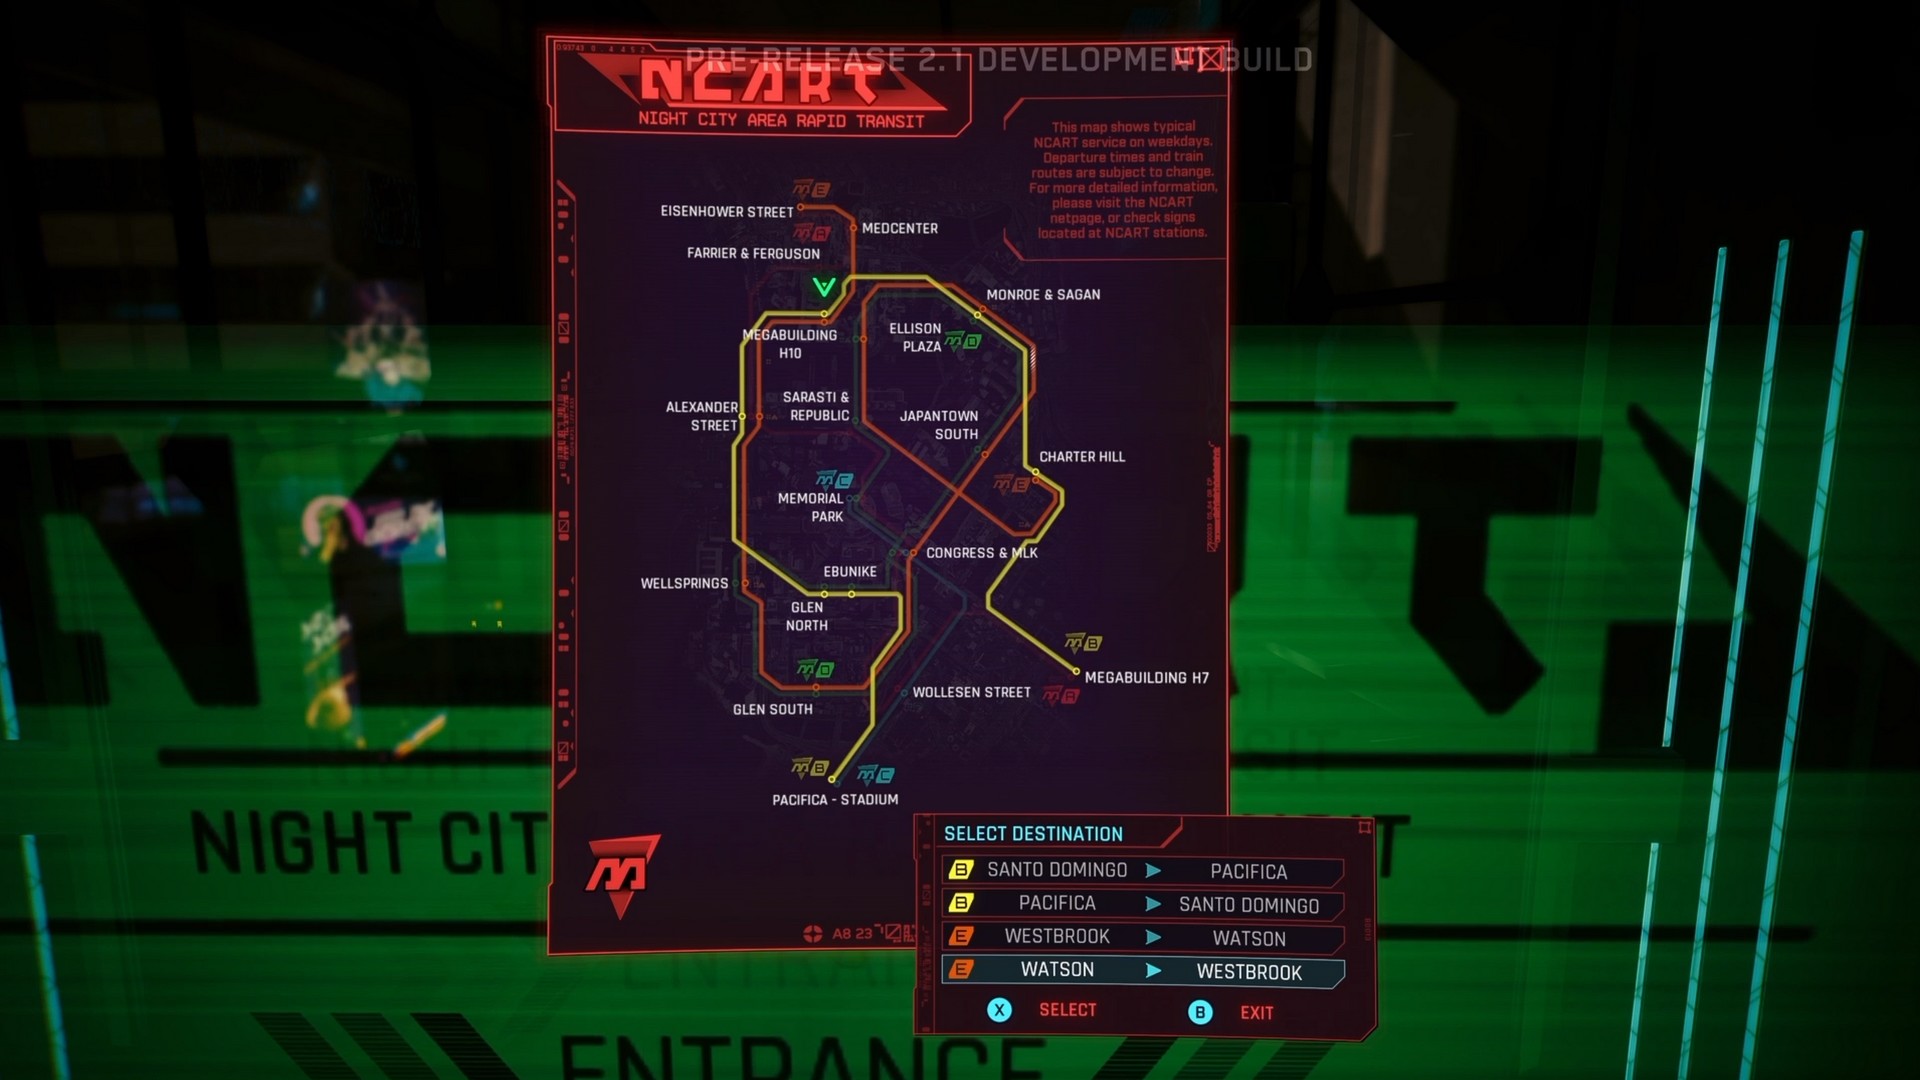 Mise à jour 2.1 de Cyberpunk 2077 : véhicules, métro, courses... toutes les infos !